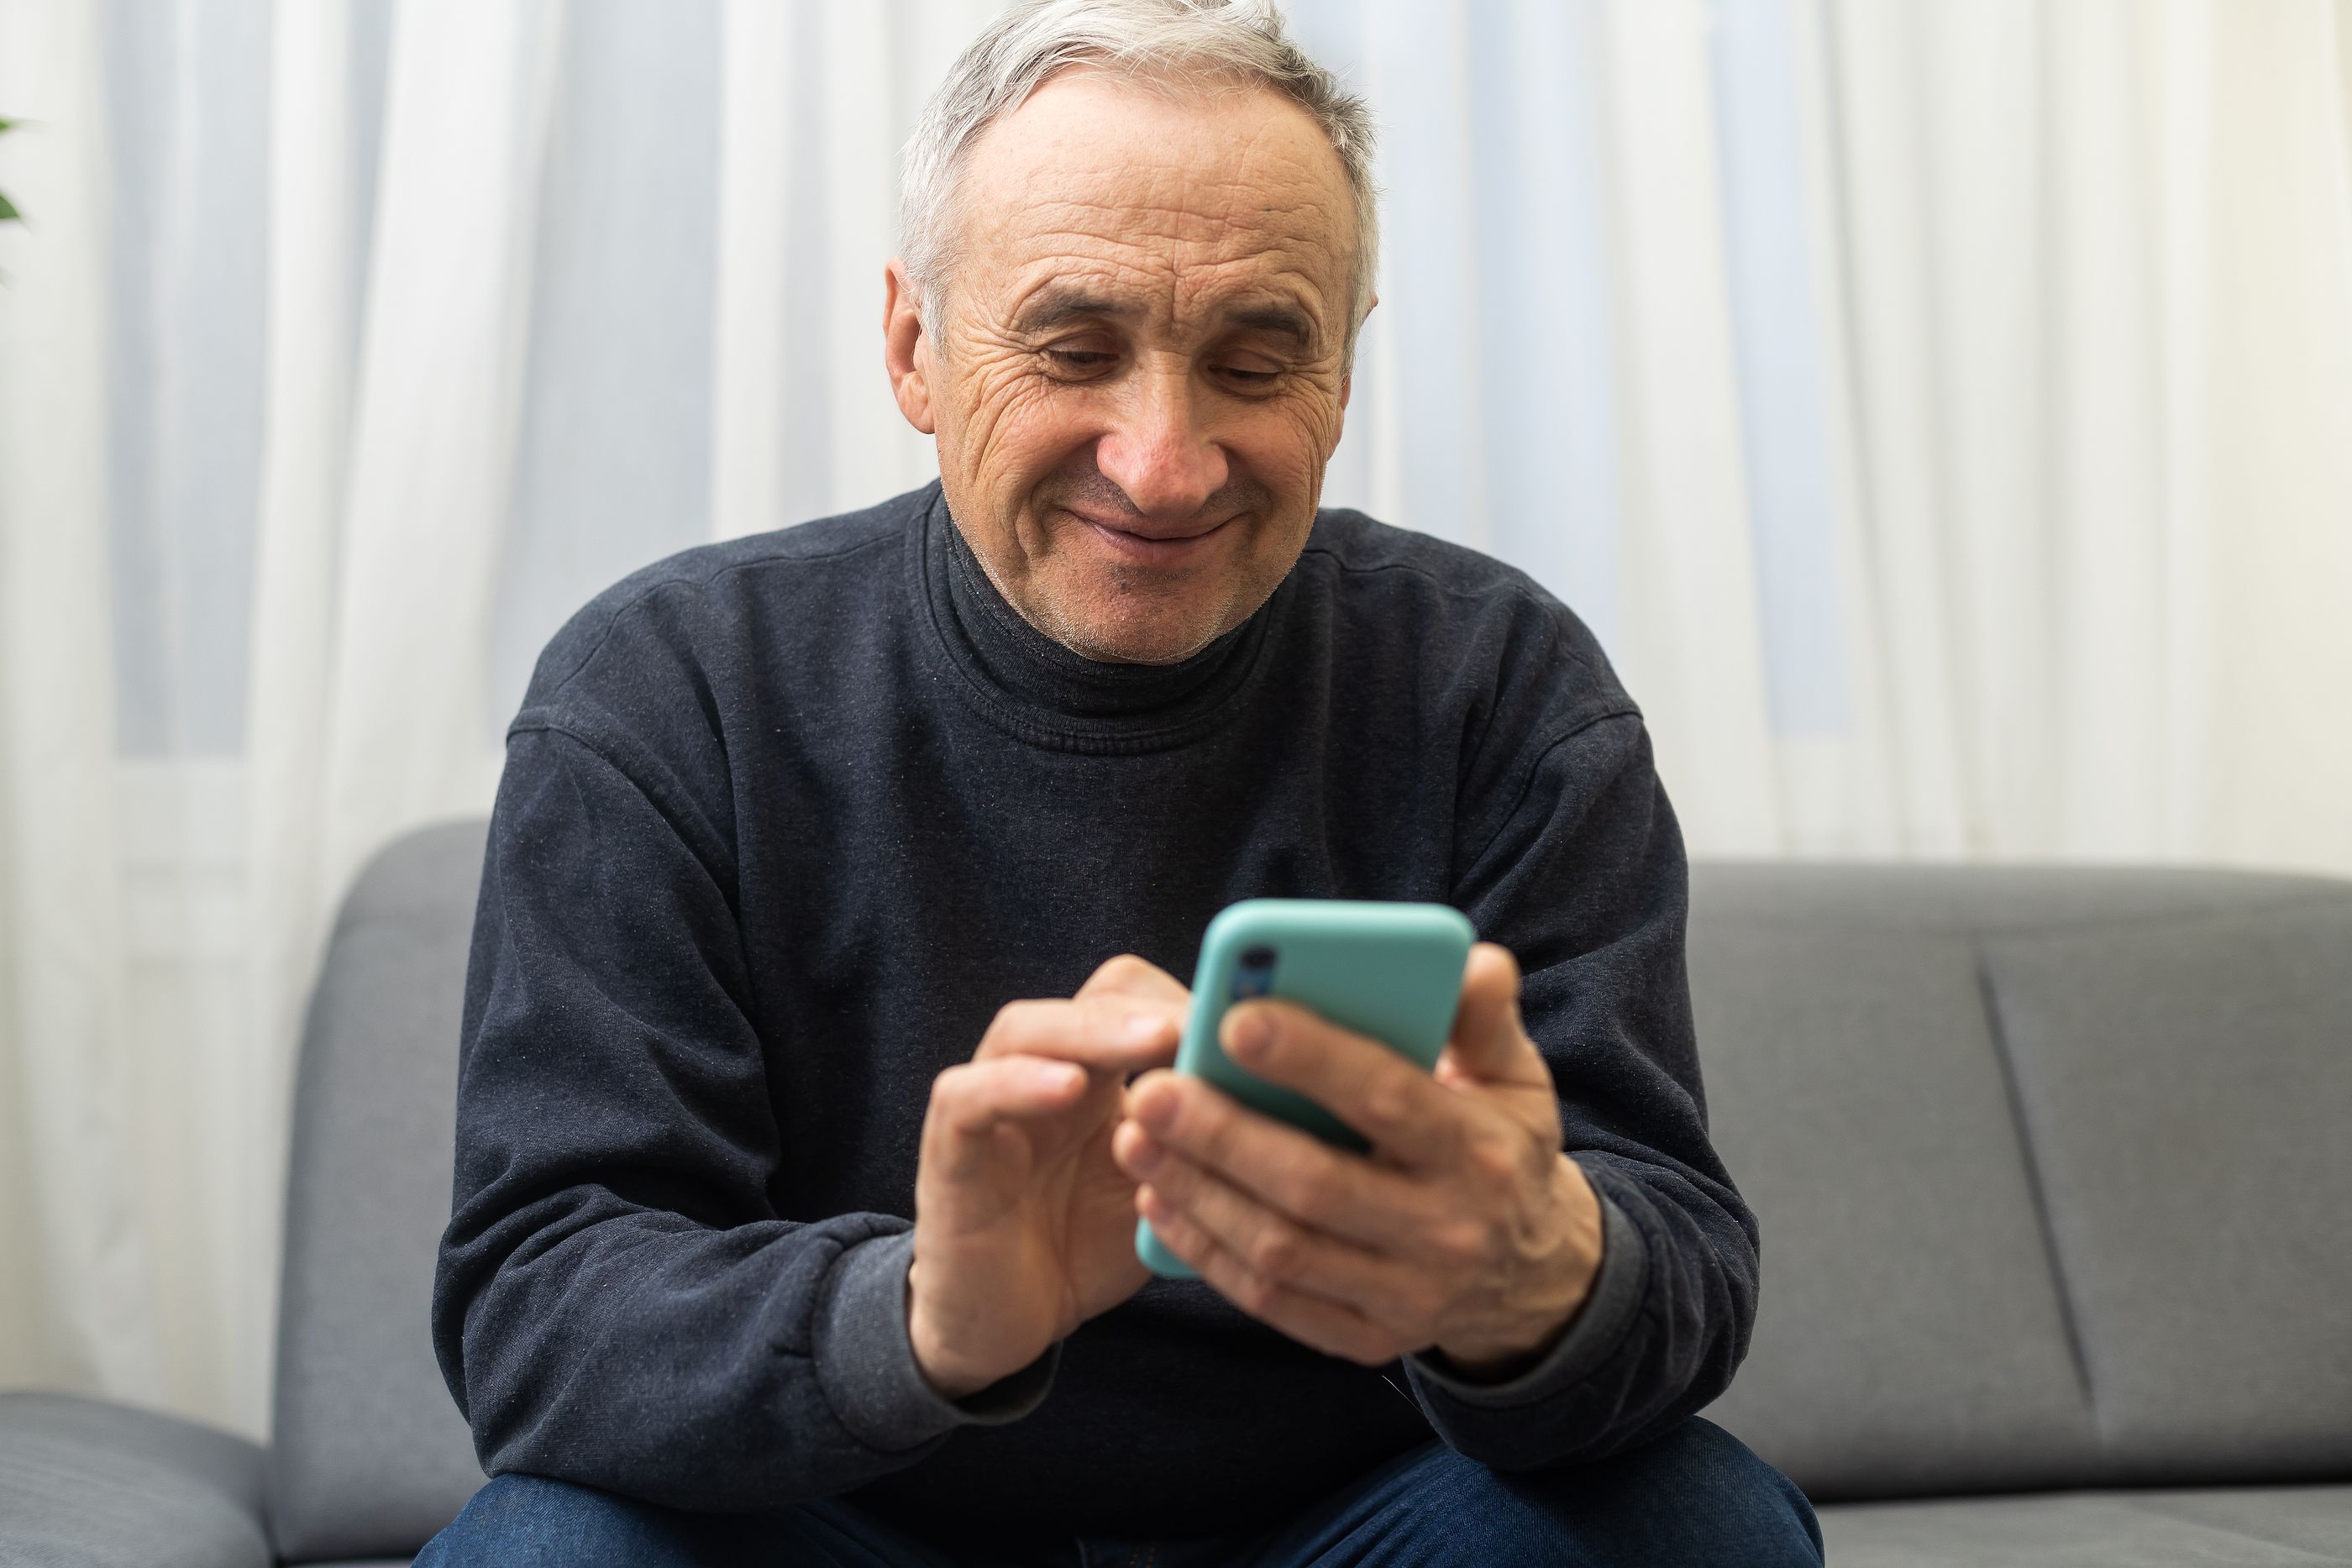 La importancia de una tecnología amigable y segura para las personas mayores: "Nos cambia la vida"